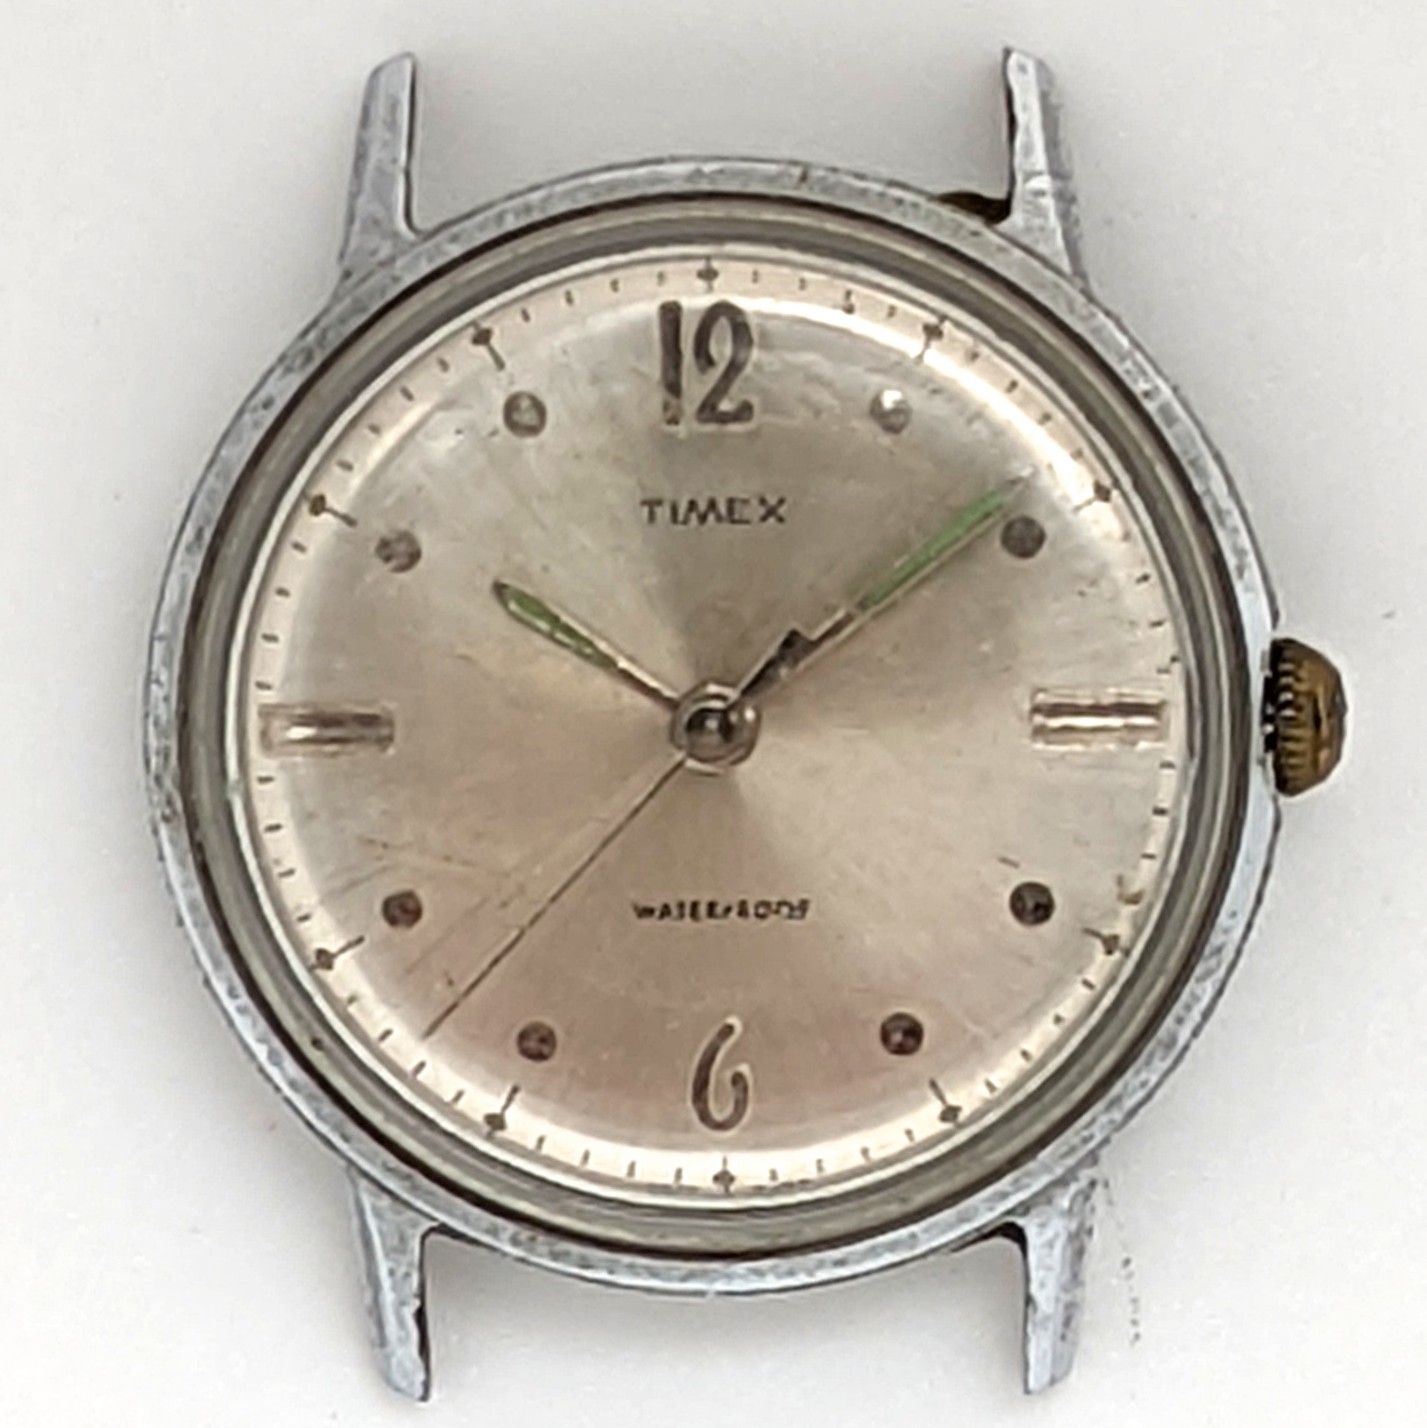 Timex Marlin 2017 2467 [1967]